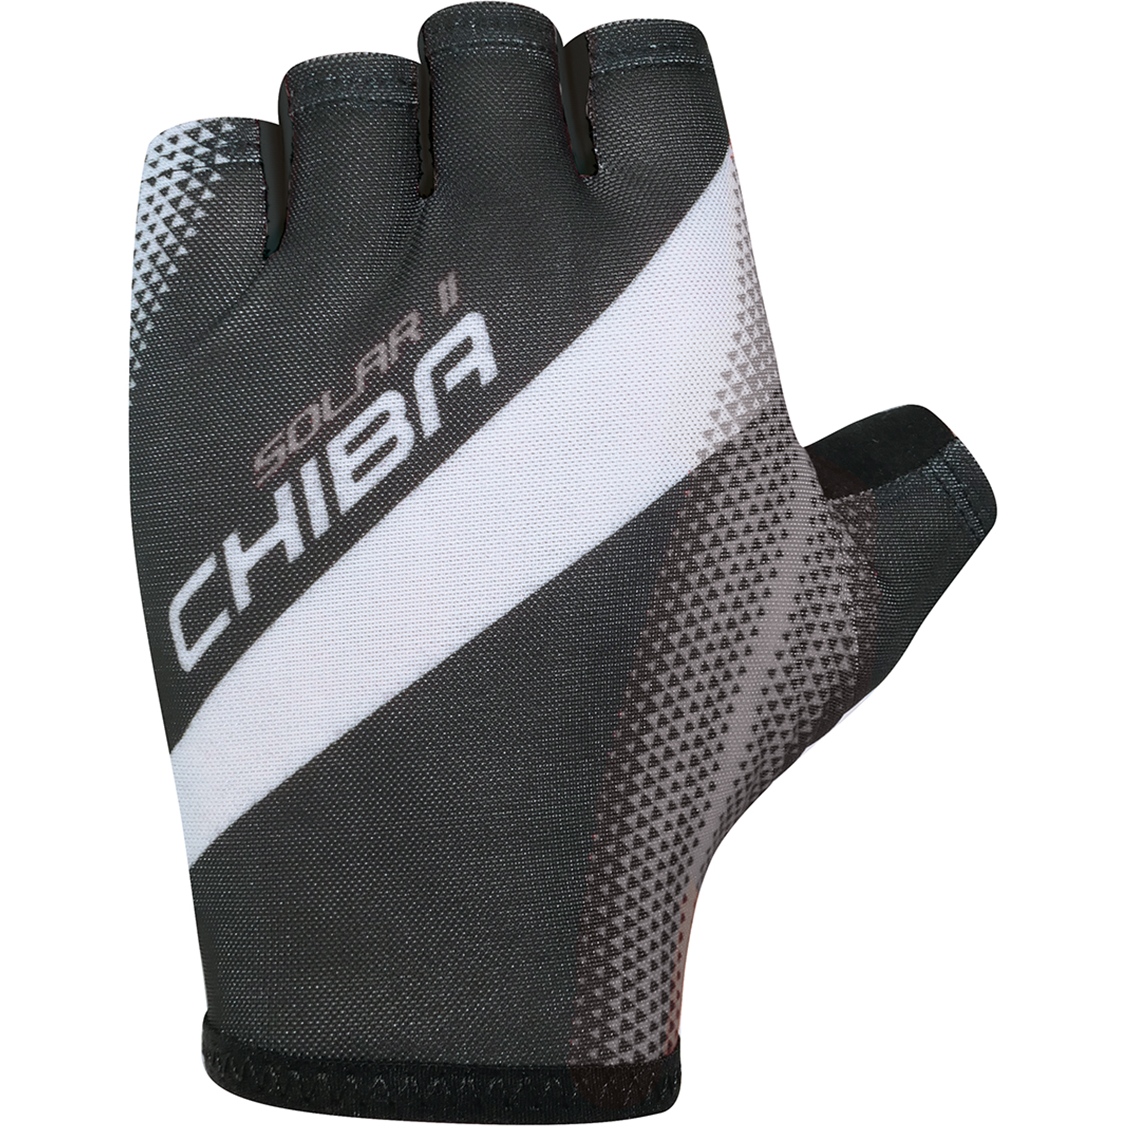 Bild von Chiba Solar II Kurzfinger-Handschuhe - schwarz/schwarz